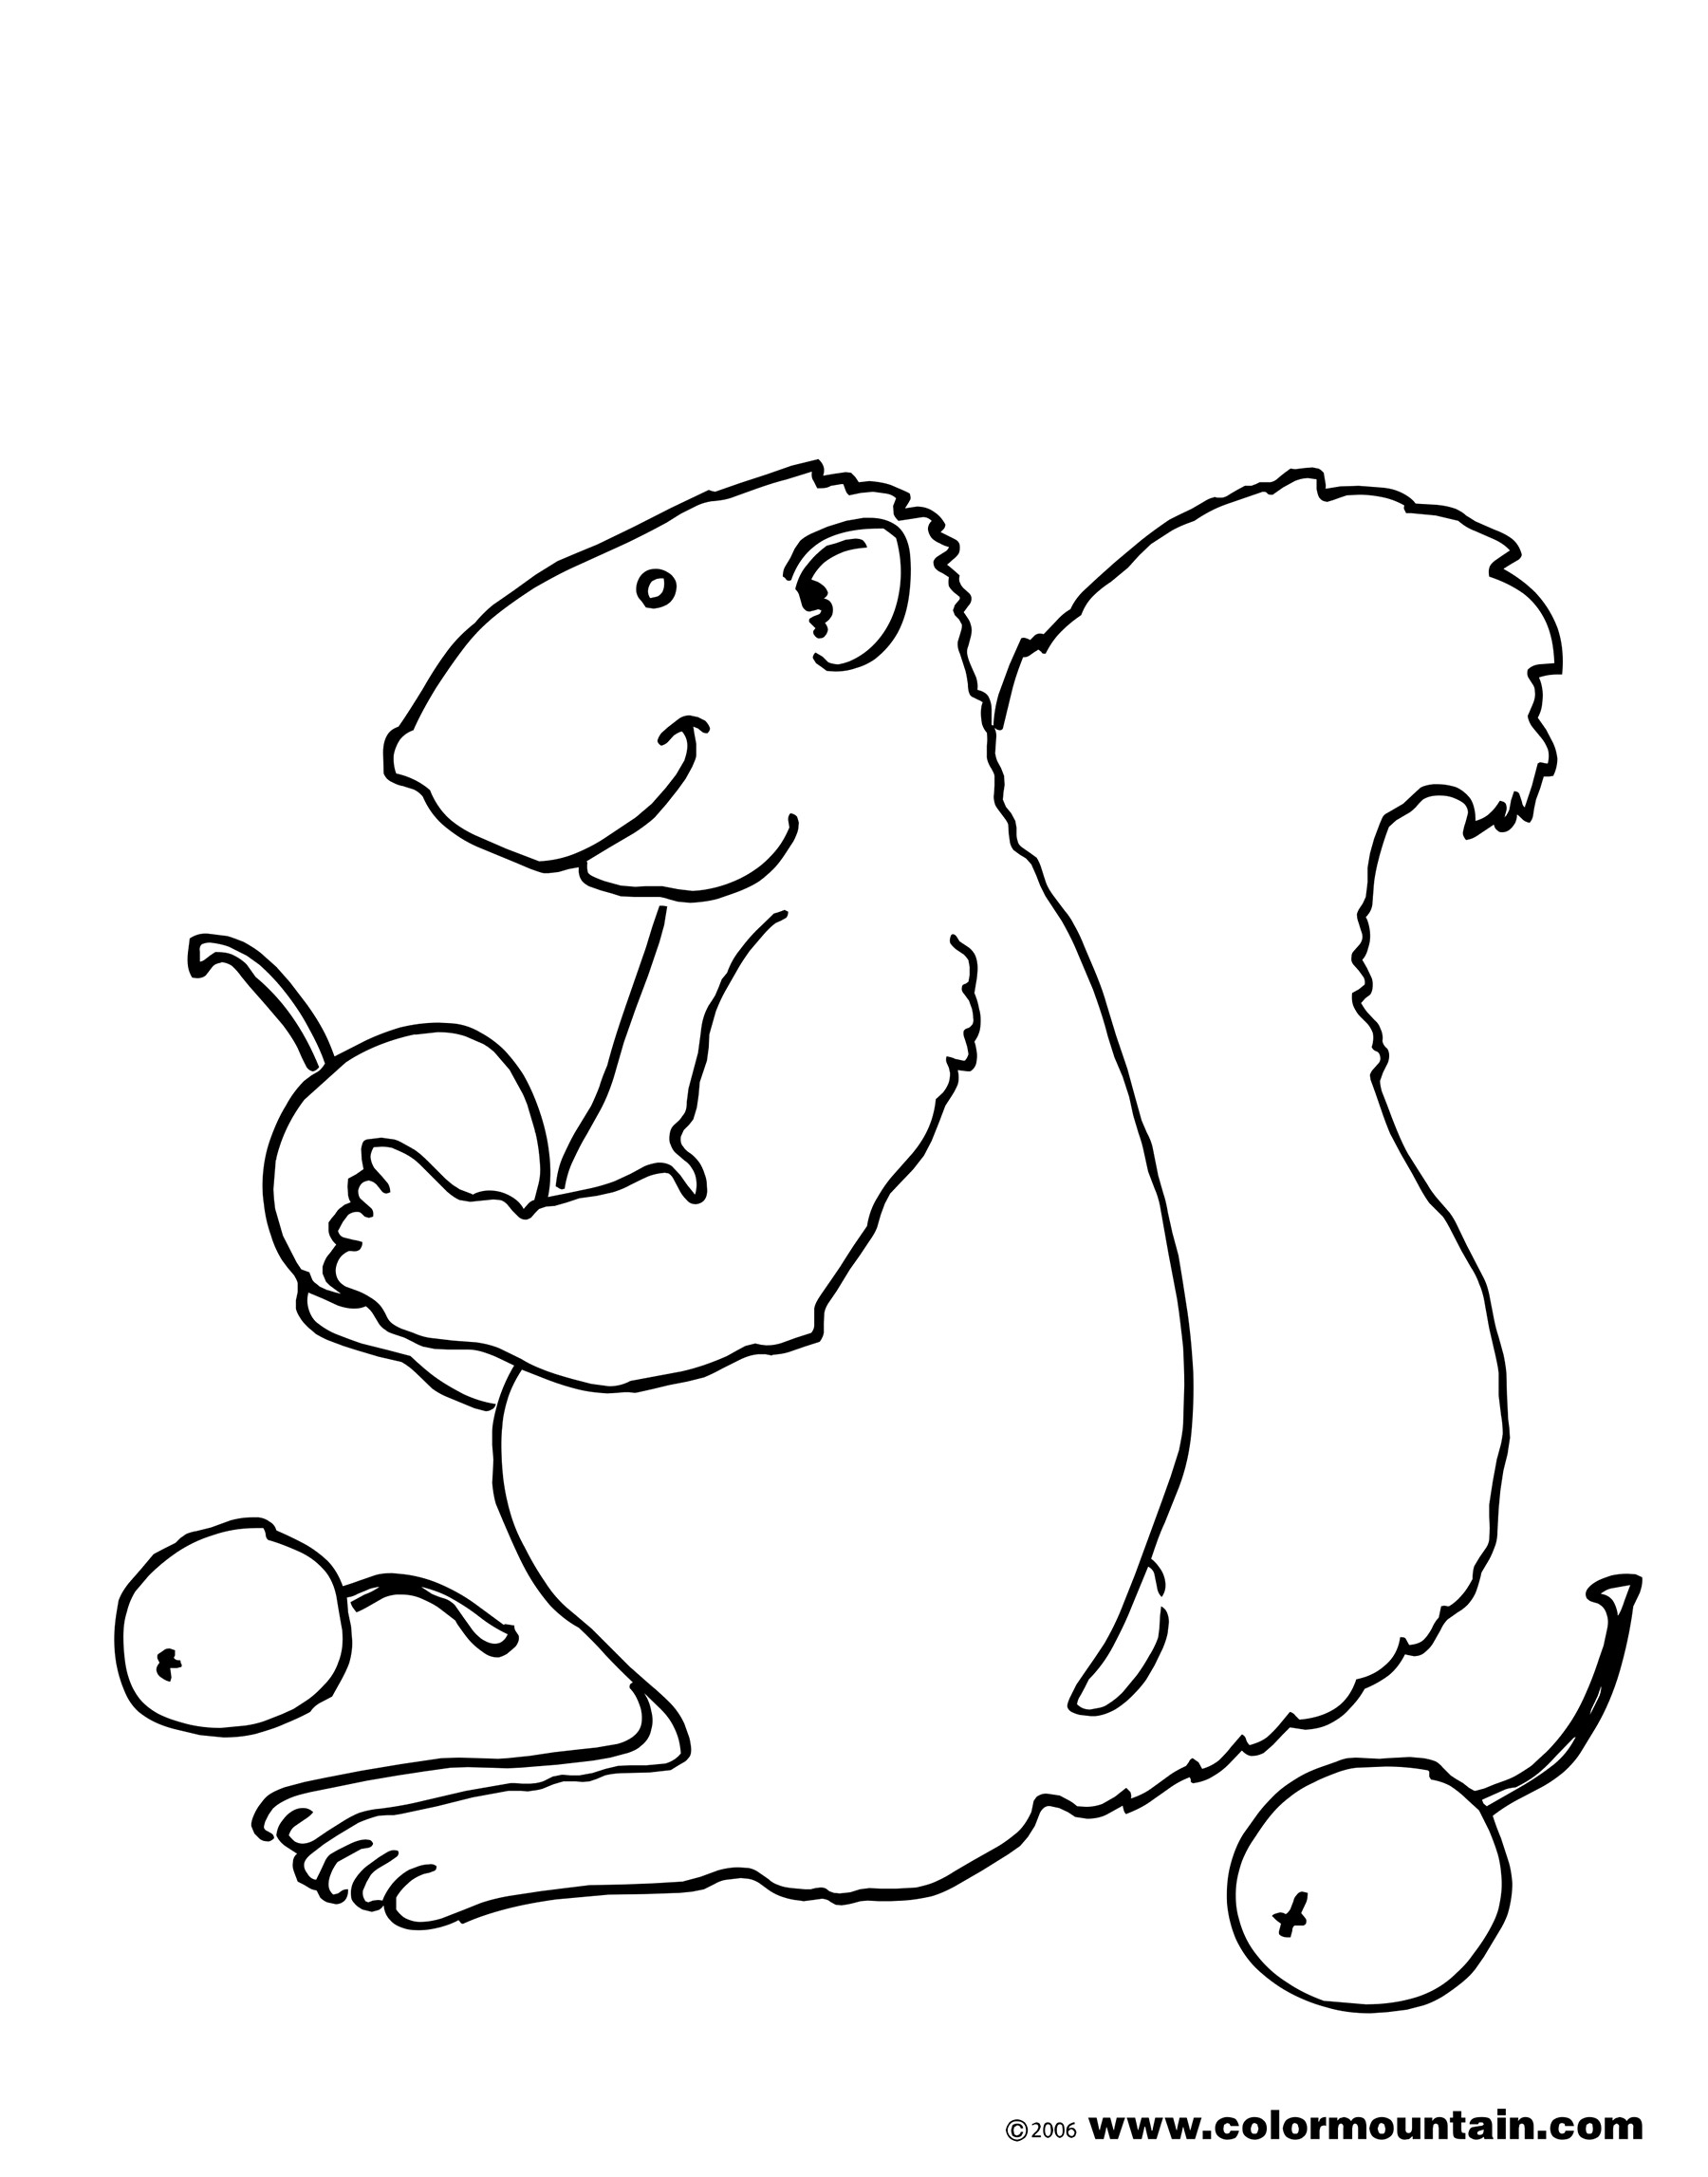 Malvorlage: Eichhörnchen (Tiere) #6250 - Kostenlose Malvorlagen zum Ausdrucken